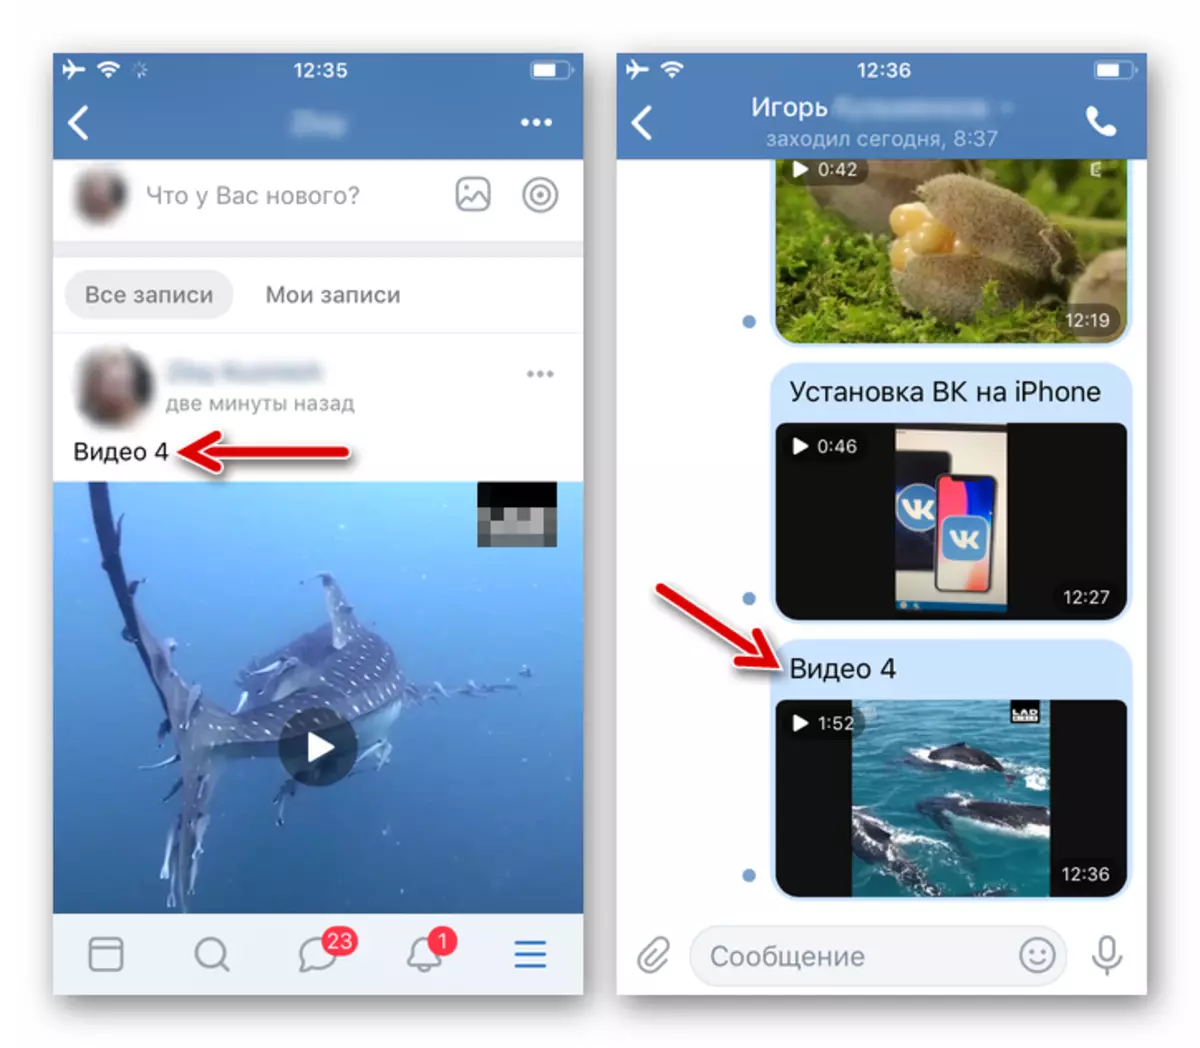 Vkontakte สำหรับ iPhone - วิดีโอถูกโพสต์ใน SCET และส่งข้อความผ่านตัวจัดการไฟล์สำหรับ iOS